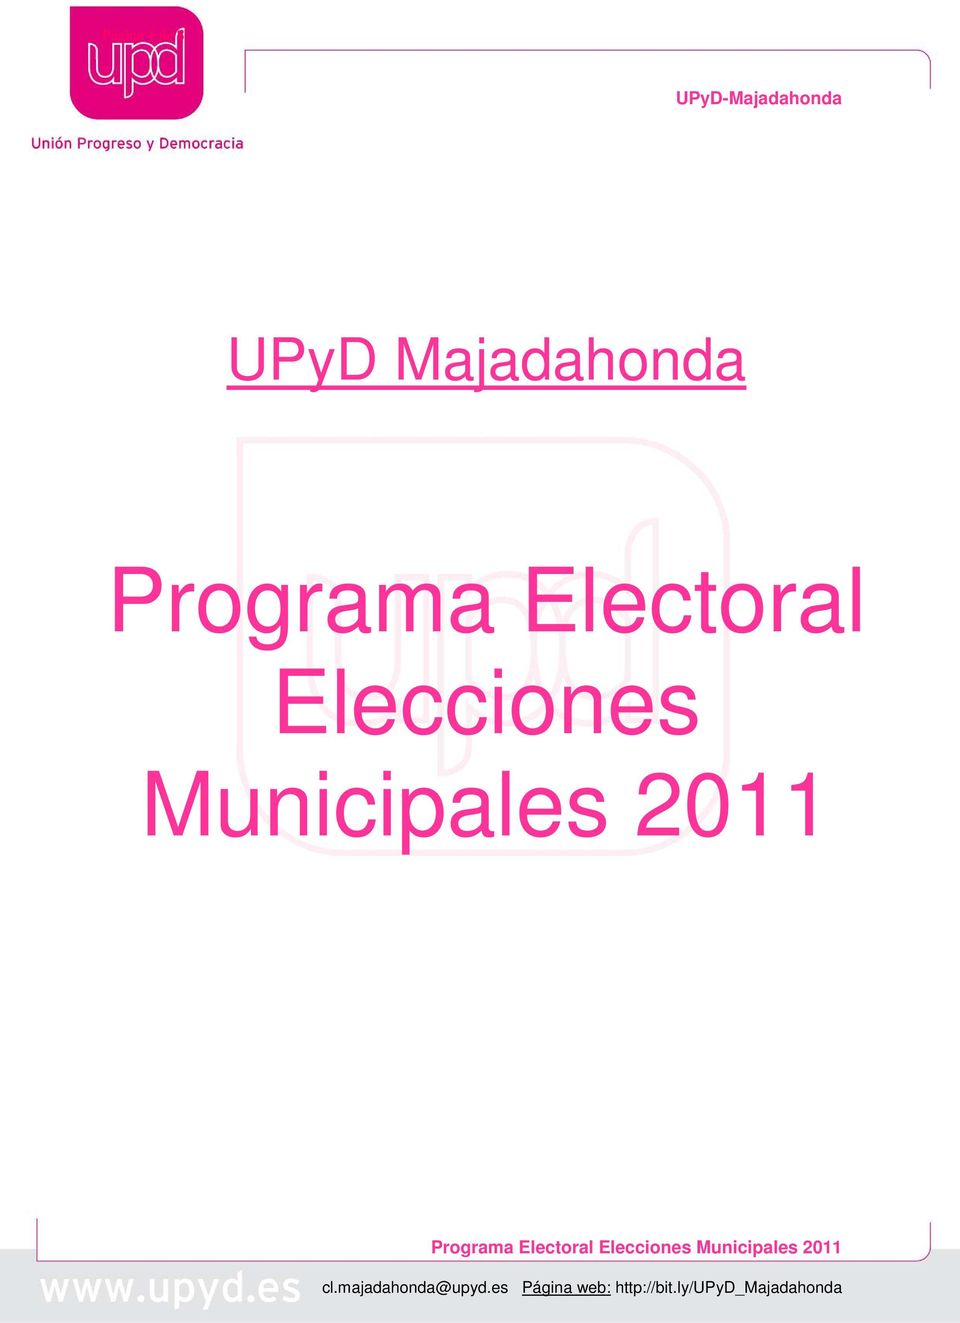 Programa Electoral